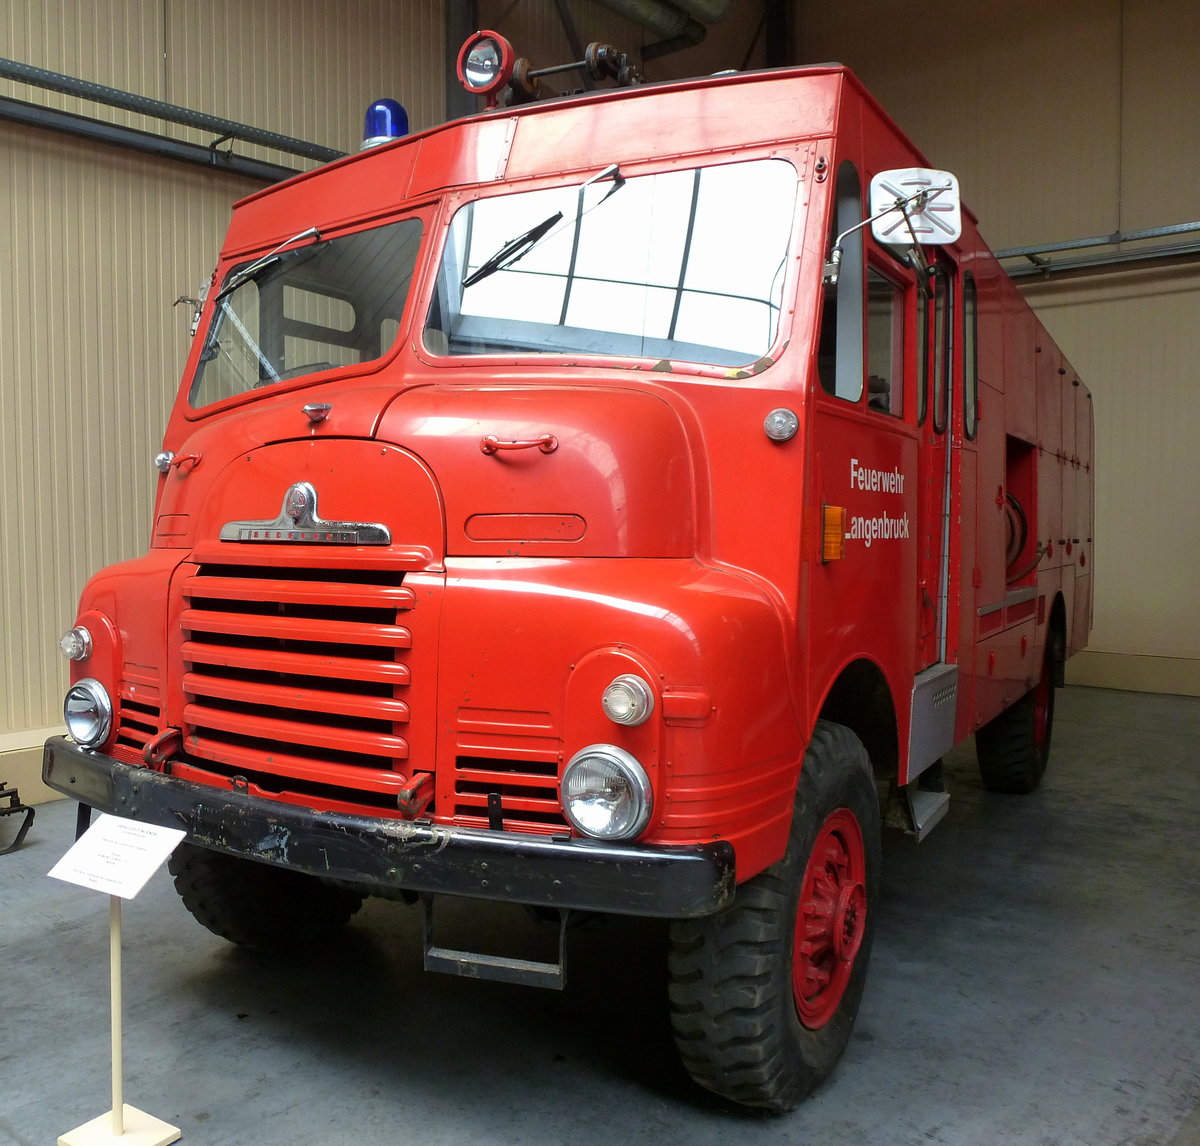 Bedford, englisches Feuerwehrauto, hat seinen Dienst in Langenbruck/Schweiz getan, Feuerwehrmuseum Vieux-Ferrette, Mai 2016